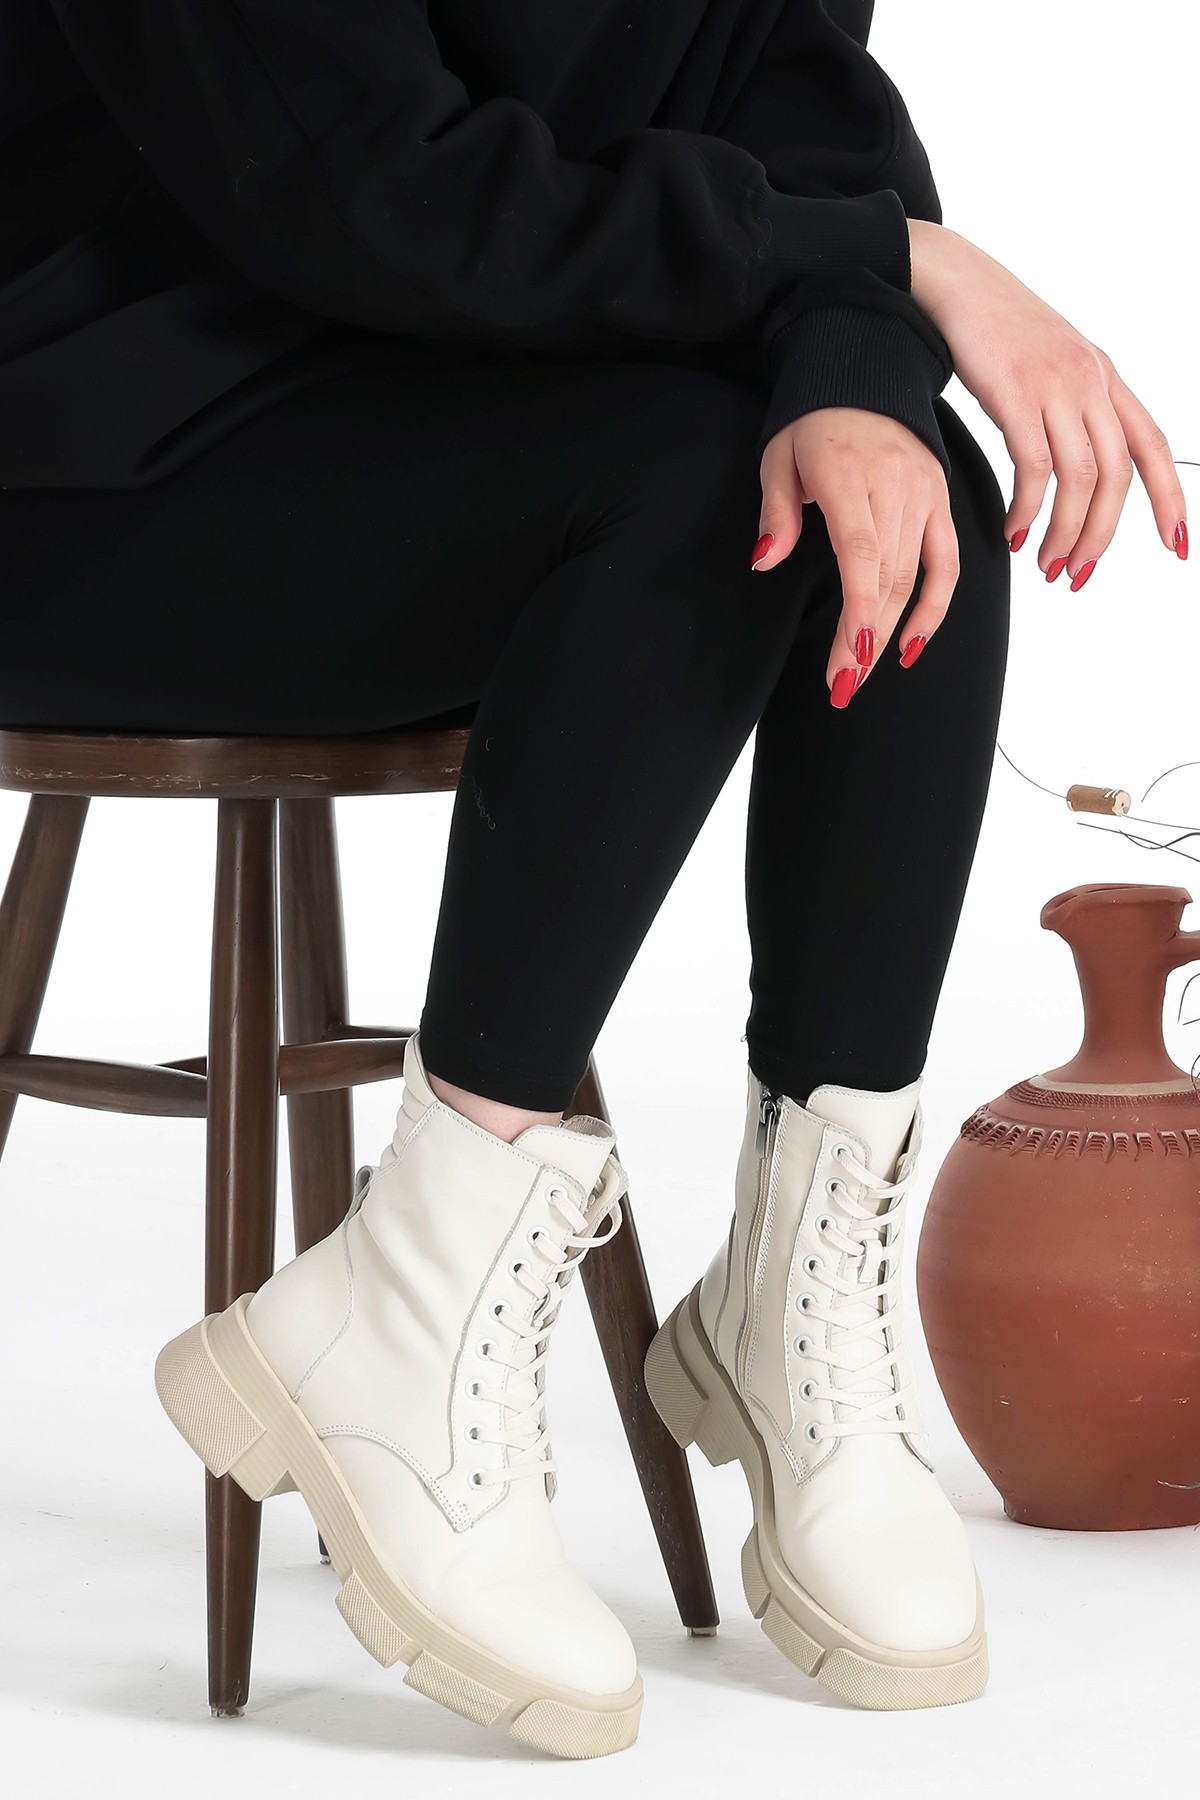 Cooliza Hakiki Deri Bağcıklı ve Fermuarlı Rahat Kadın Bot Ayakkabı - Ekru